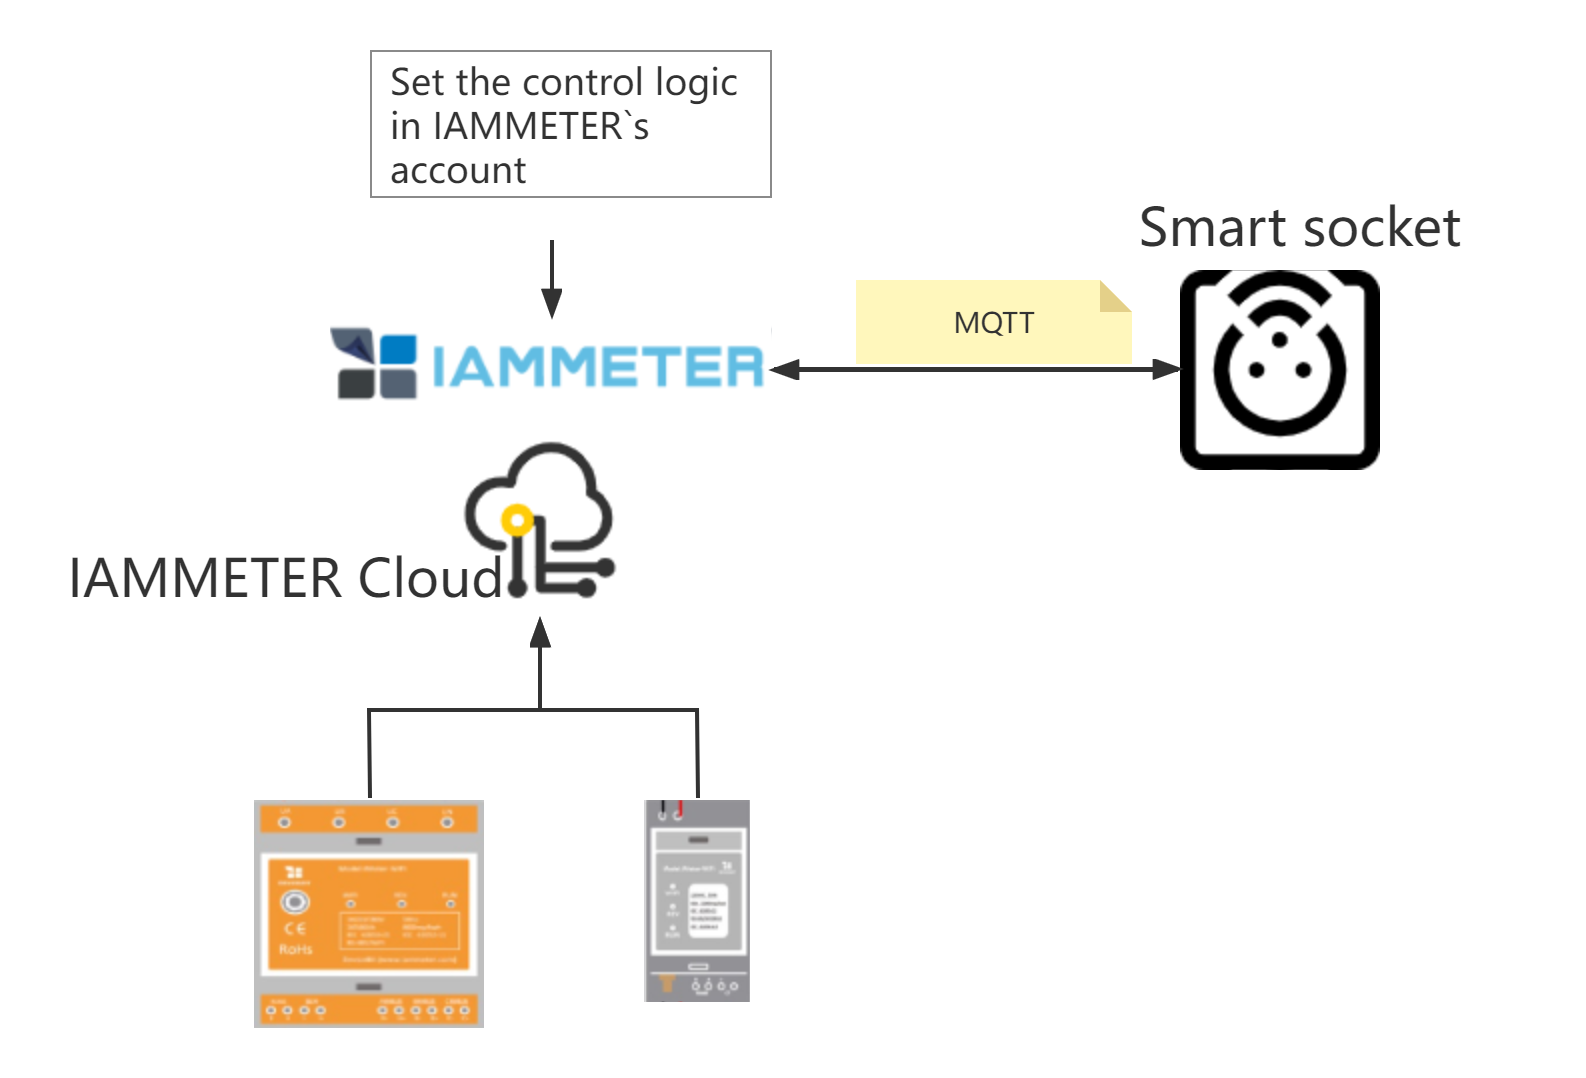 contrôler la prise intelligente mqtt dans le cloud IAMMETER